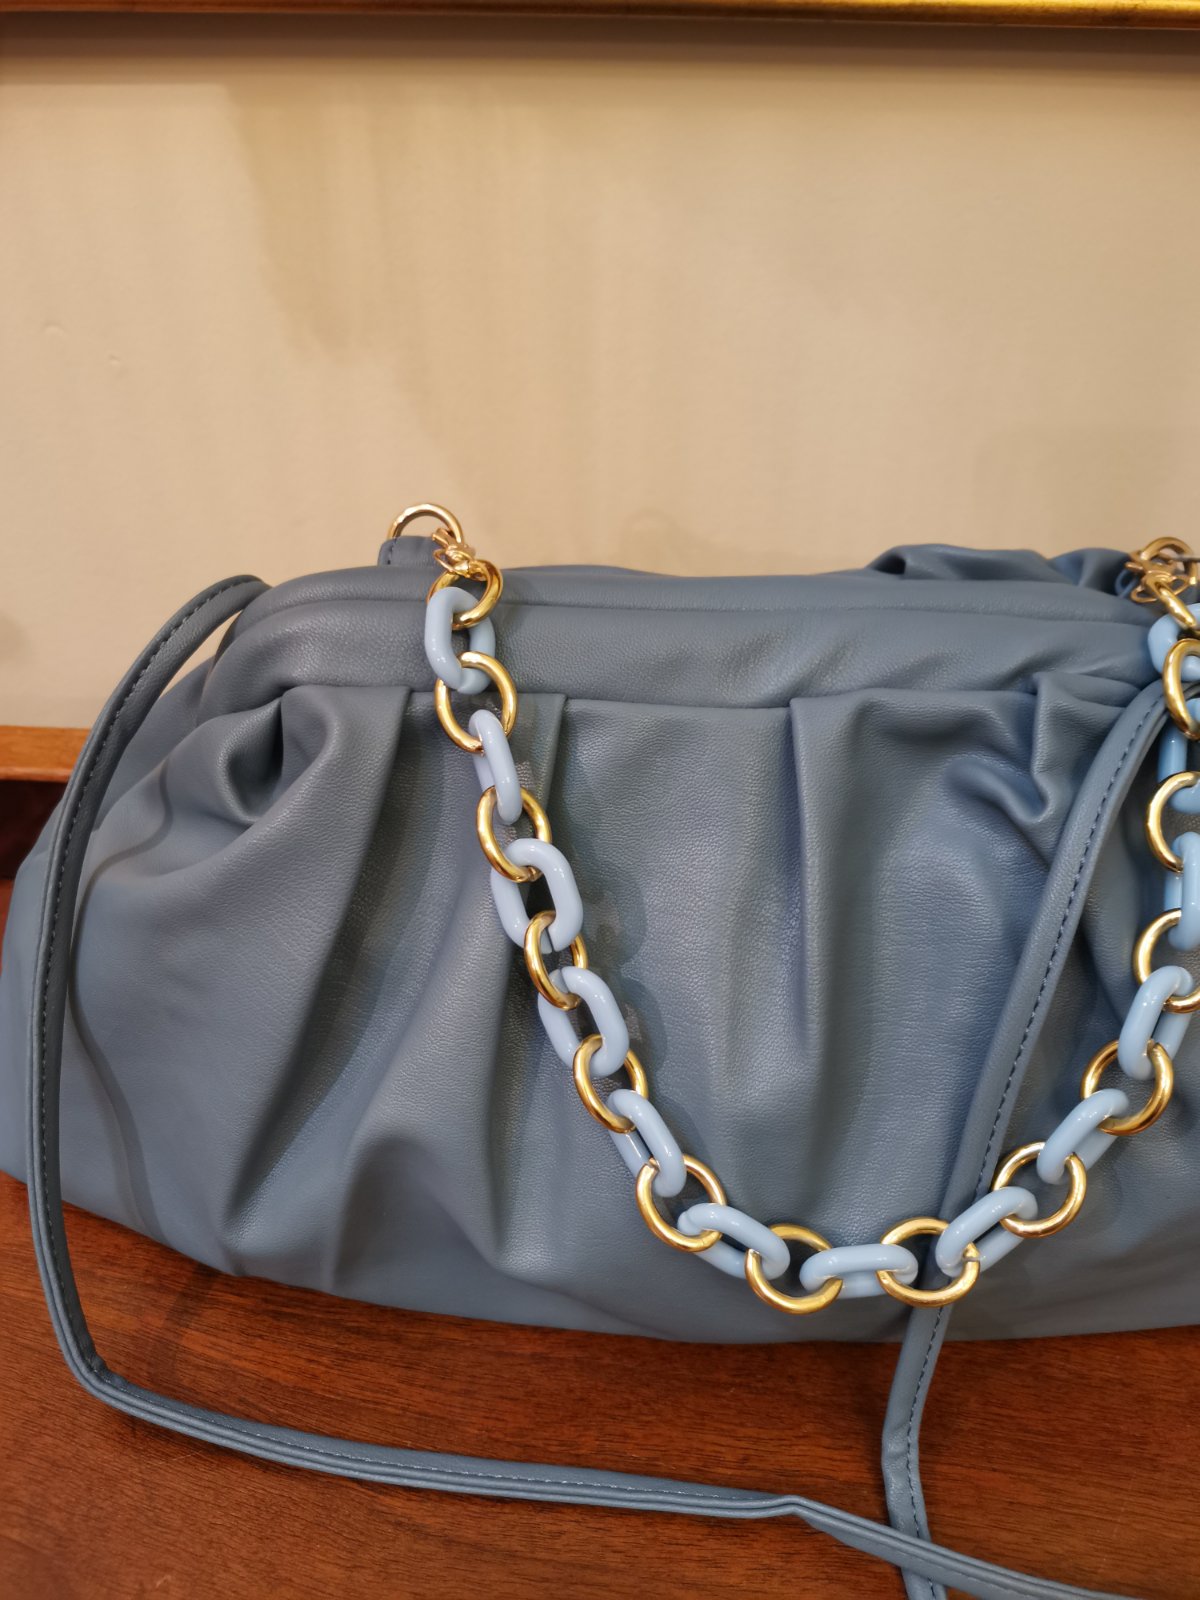 Armpit bag, in light blue  It has 2 straps